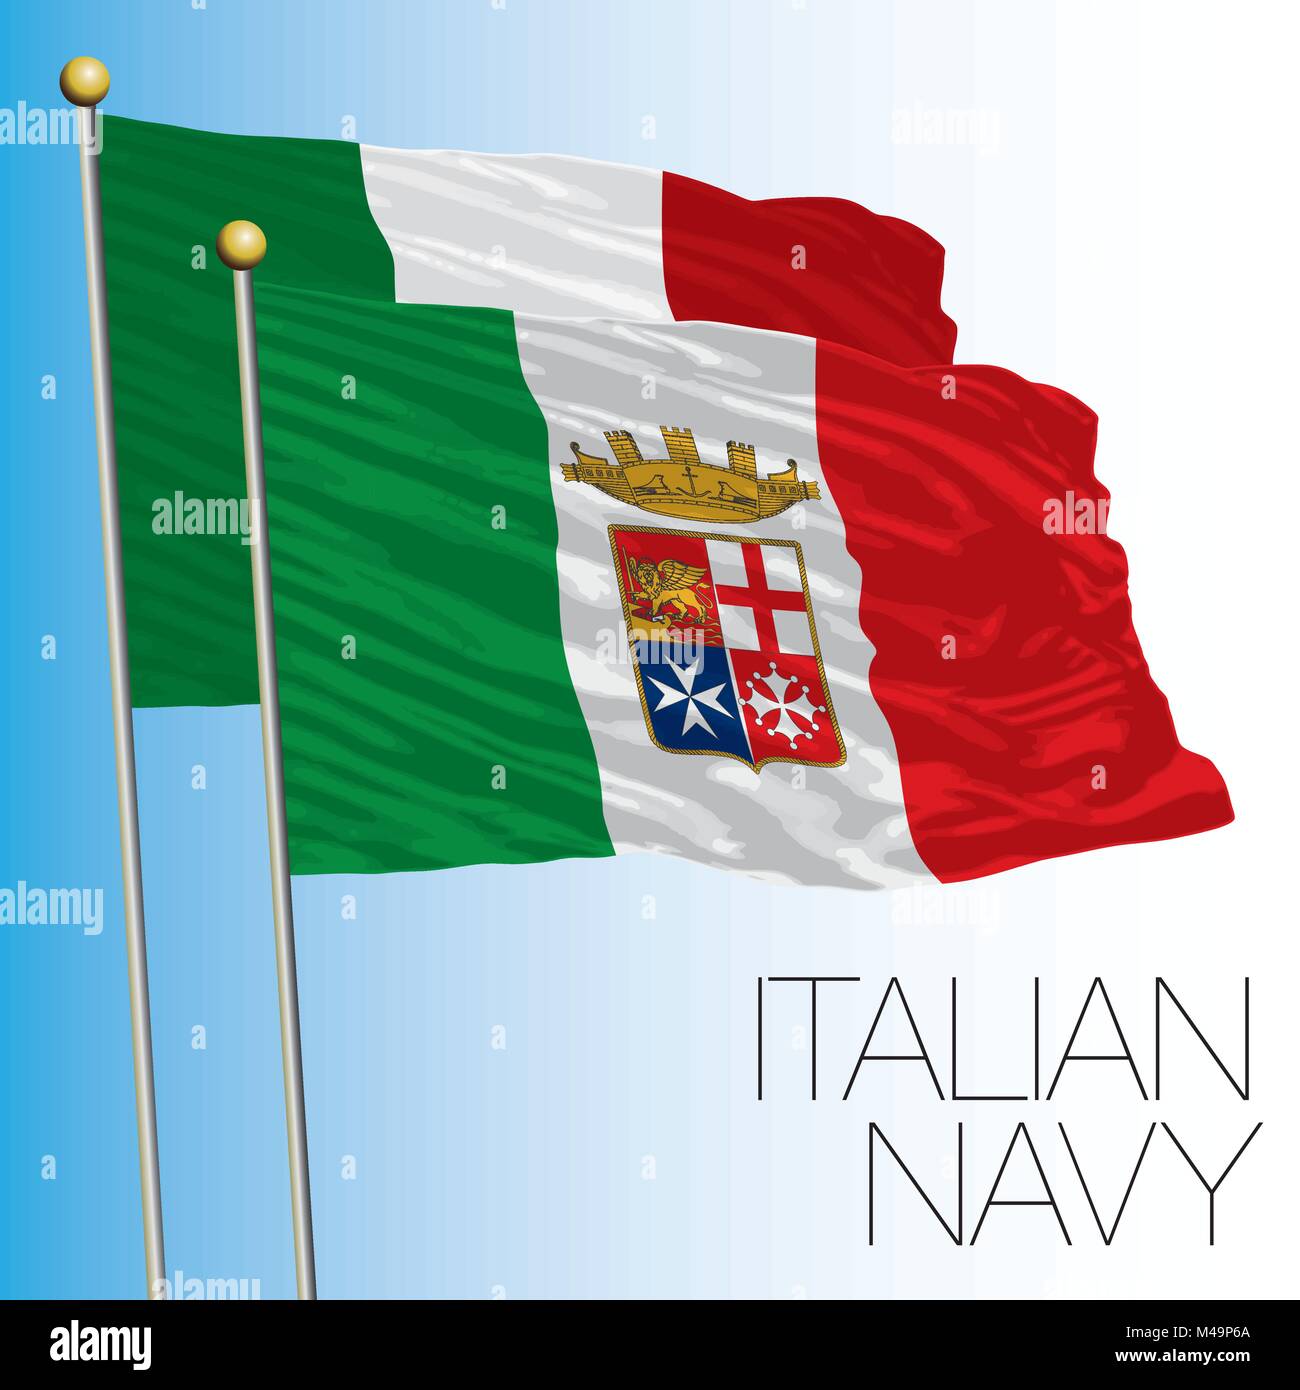 Italian Navy flag, Marina Militare, Italy Stock Vector